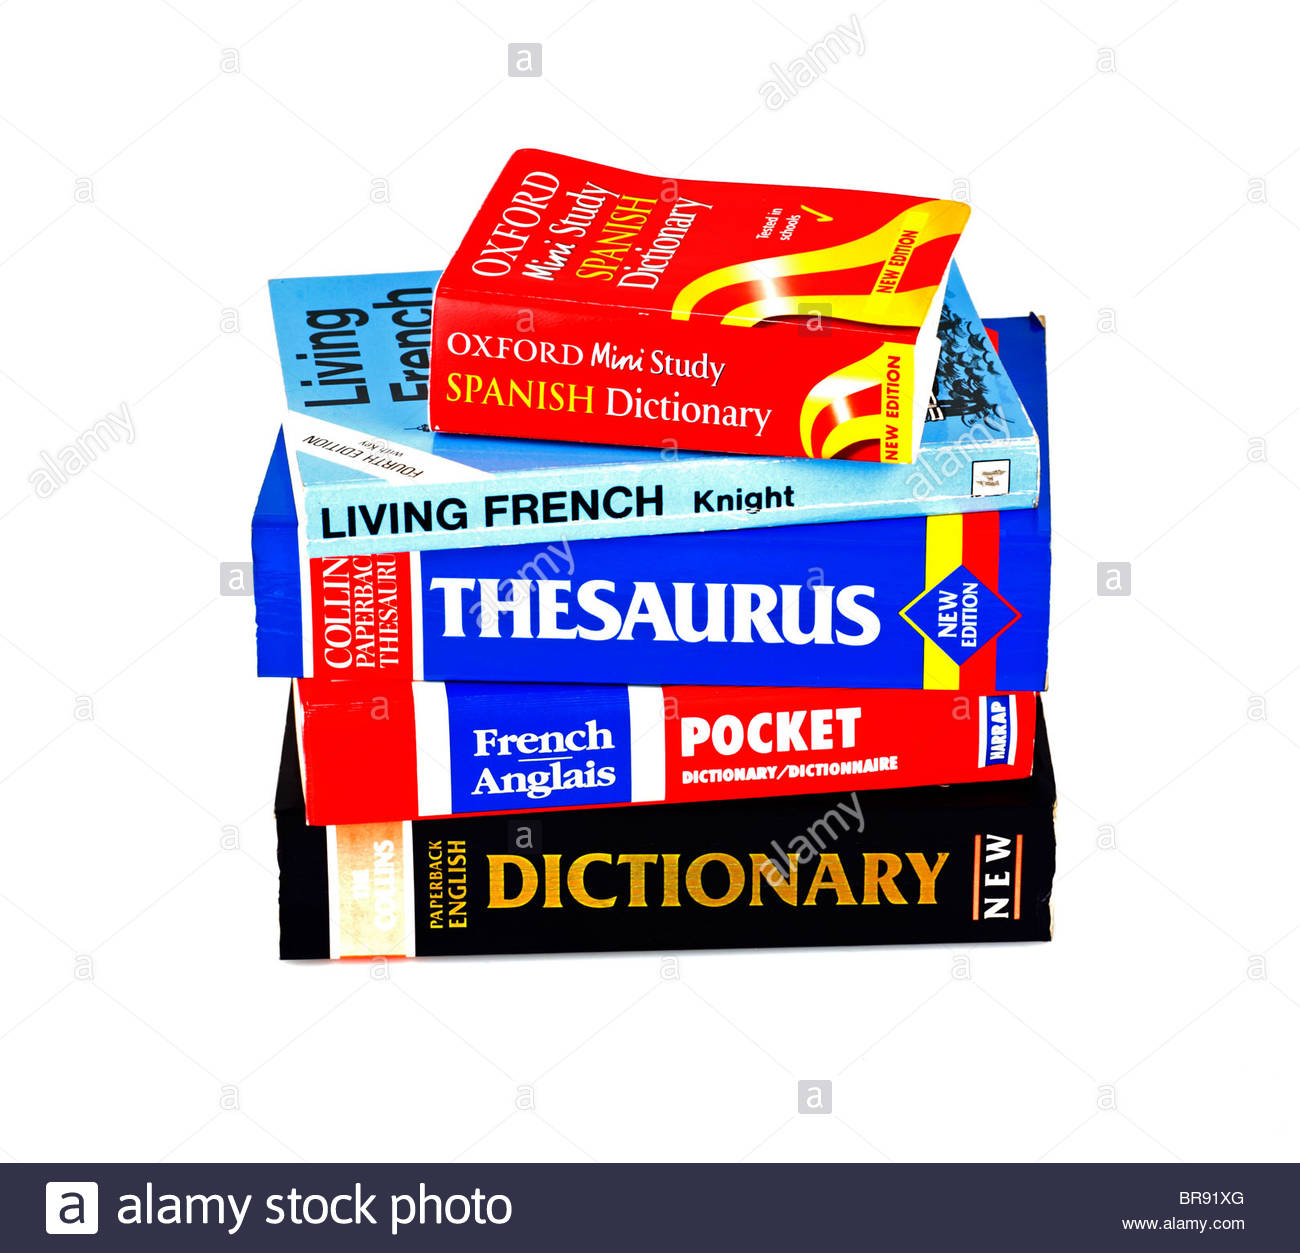 Language books piled up Stock Photo